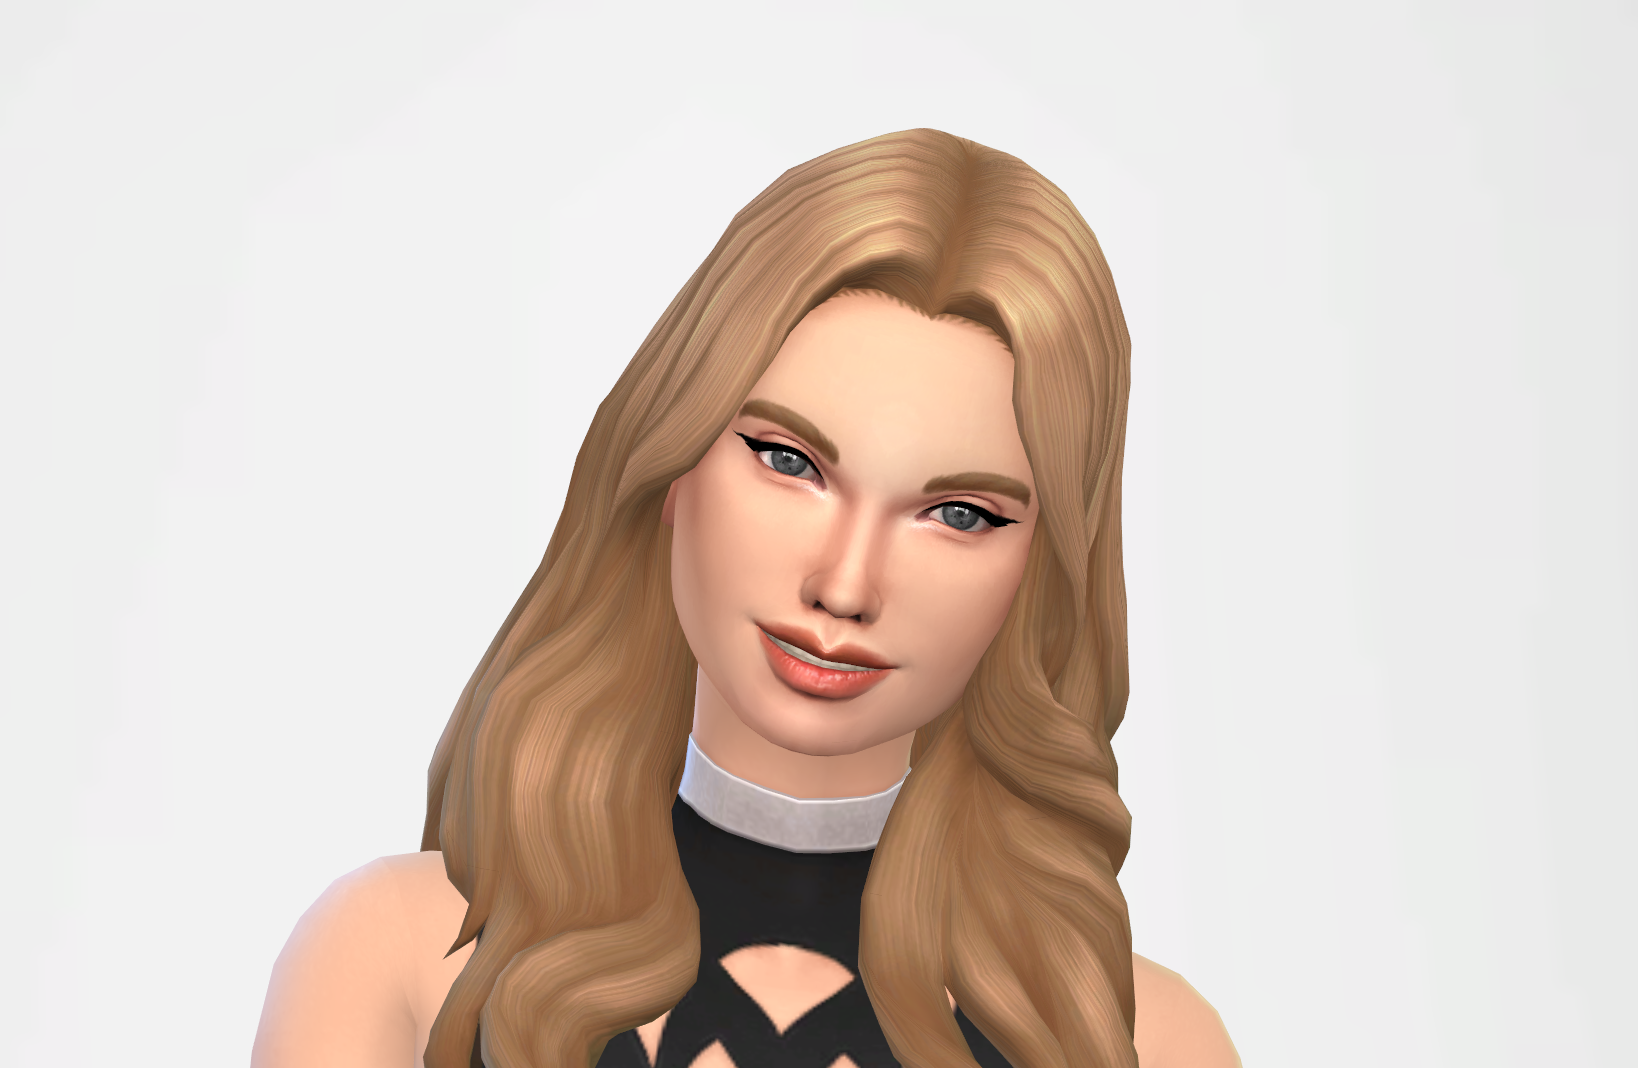 Sims 4 Makeup Mod